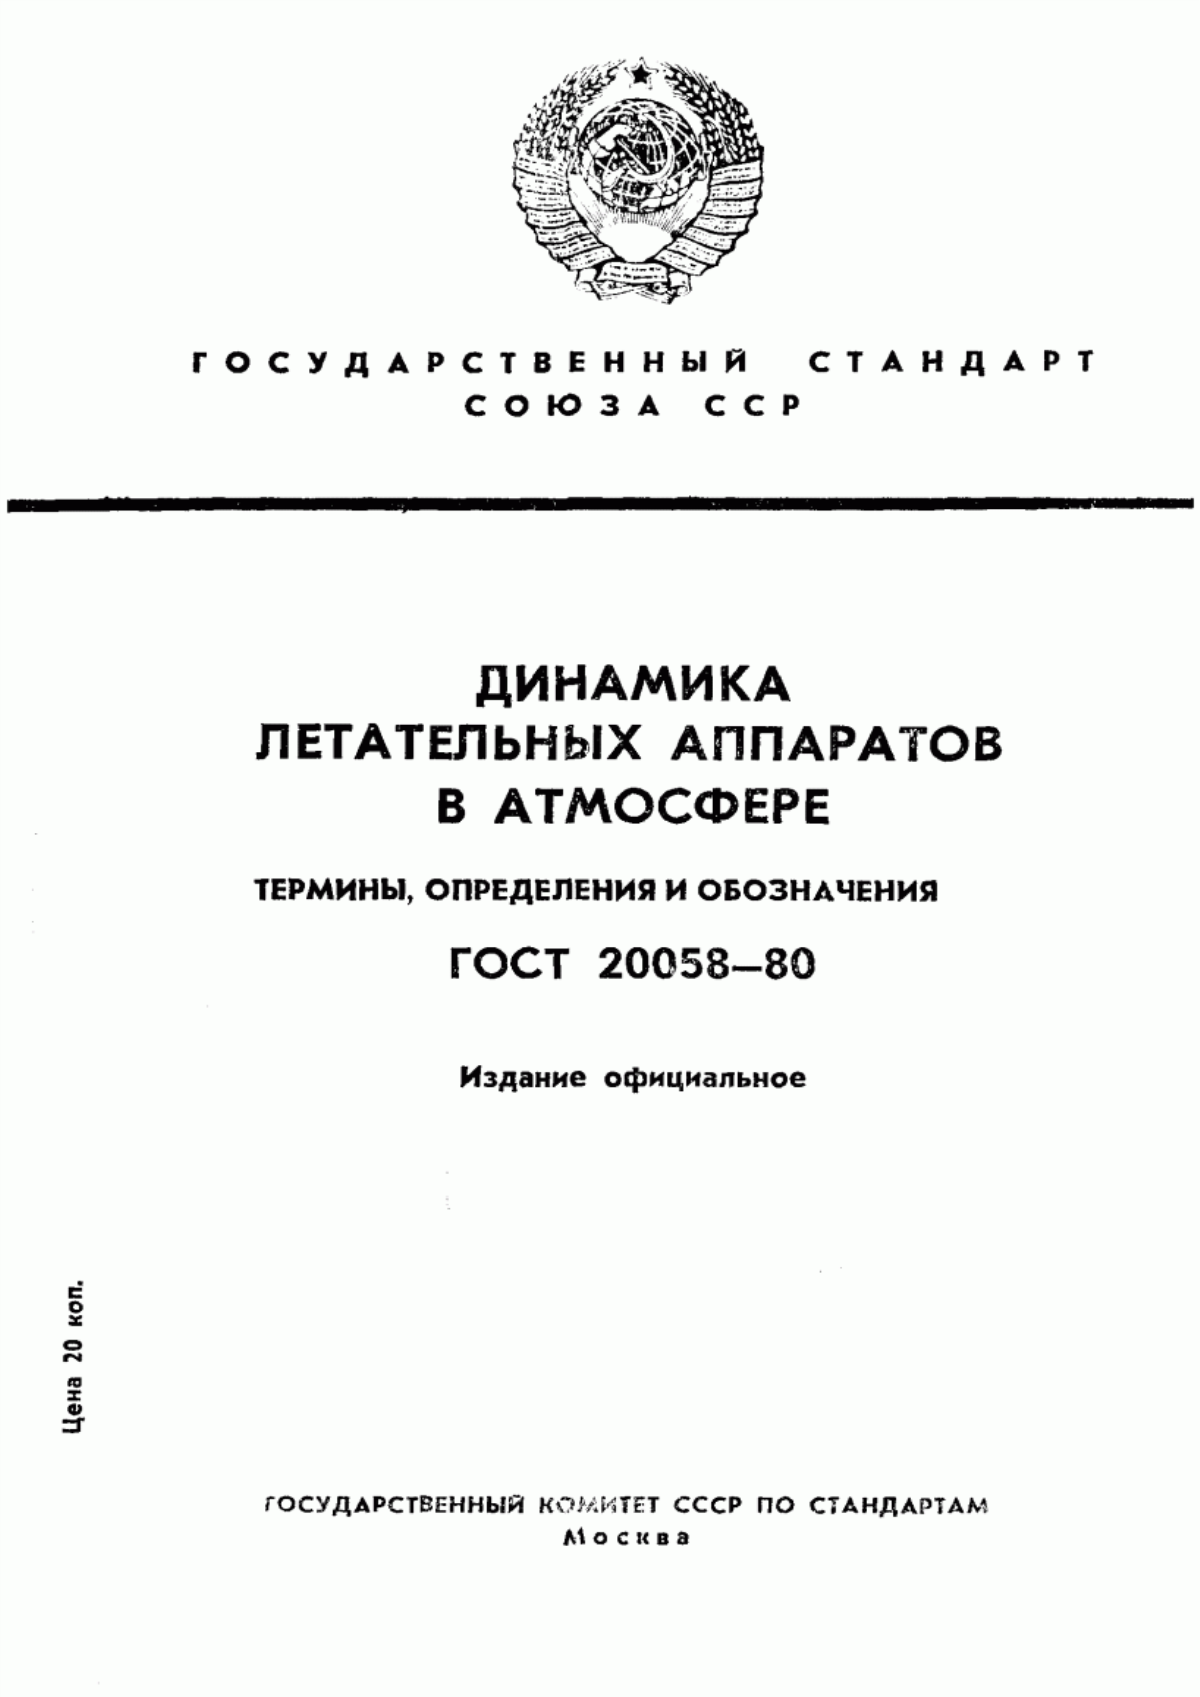 ГОСТ 20058-80 Динамика летательных аппаратов в атмосфере. Термины, определения и обозначения